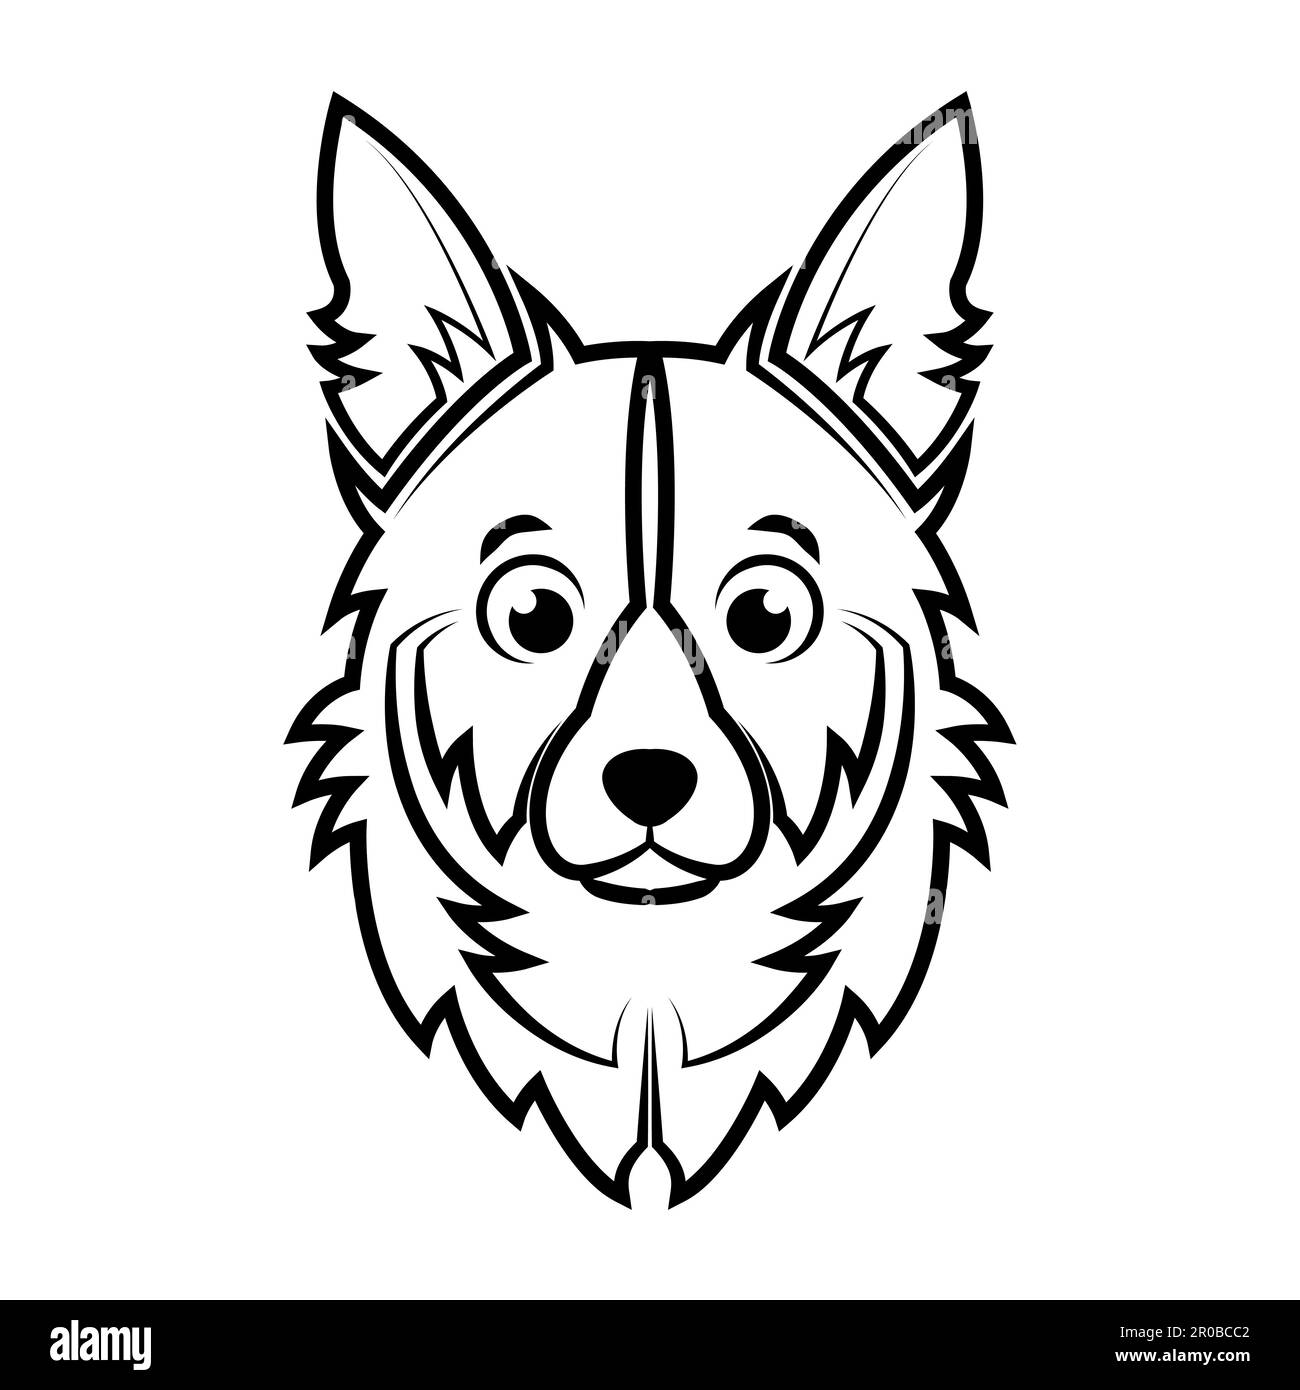 Dessin de la tête de chien en noir et blanc. Bon usage pour symbole, mascotte, icône, avatar, tatouage, T-shirt, logo ou tout autre motif Illustration de Vecteur